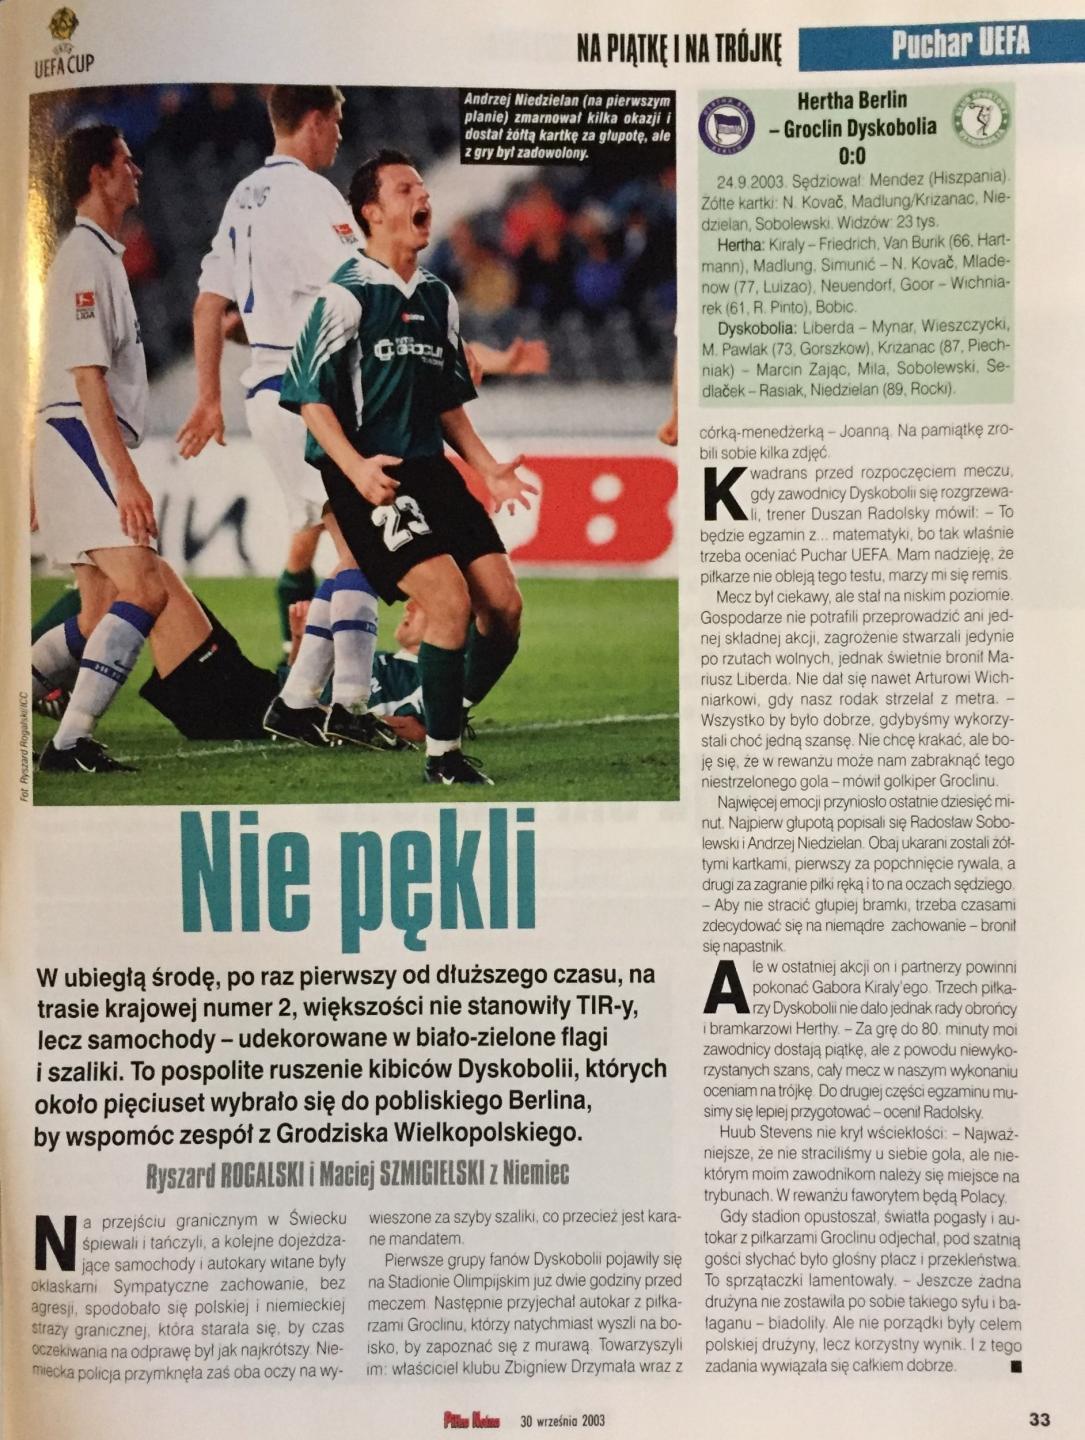 Hertha BSC Berlin - Groclin Dyskobolia Grodzisk Wielkopolski 0:0 (24.09.2003) Piłka Nożna